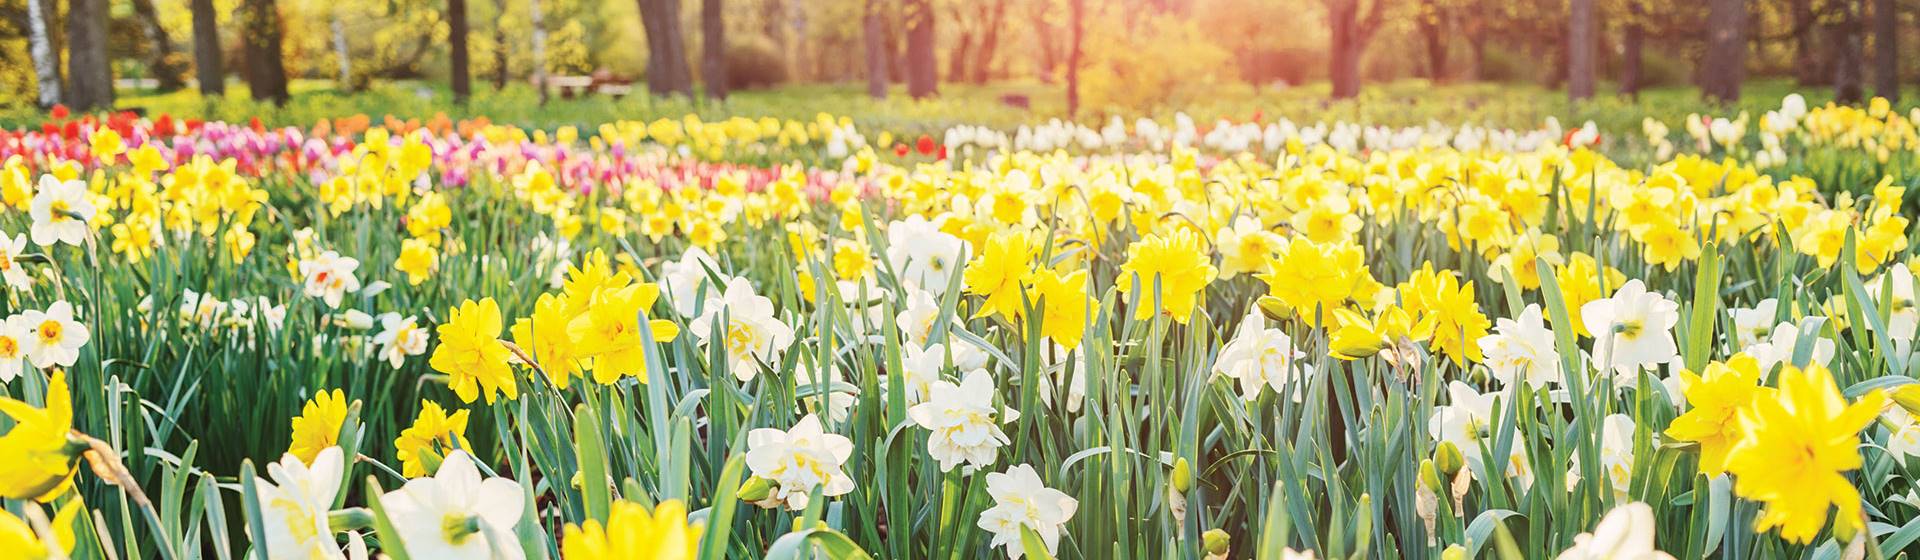 Thriplow Daffodil Festival